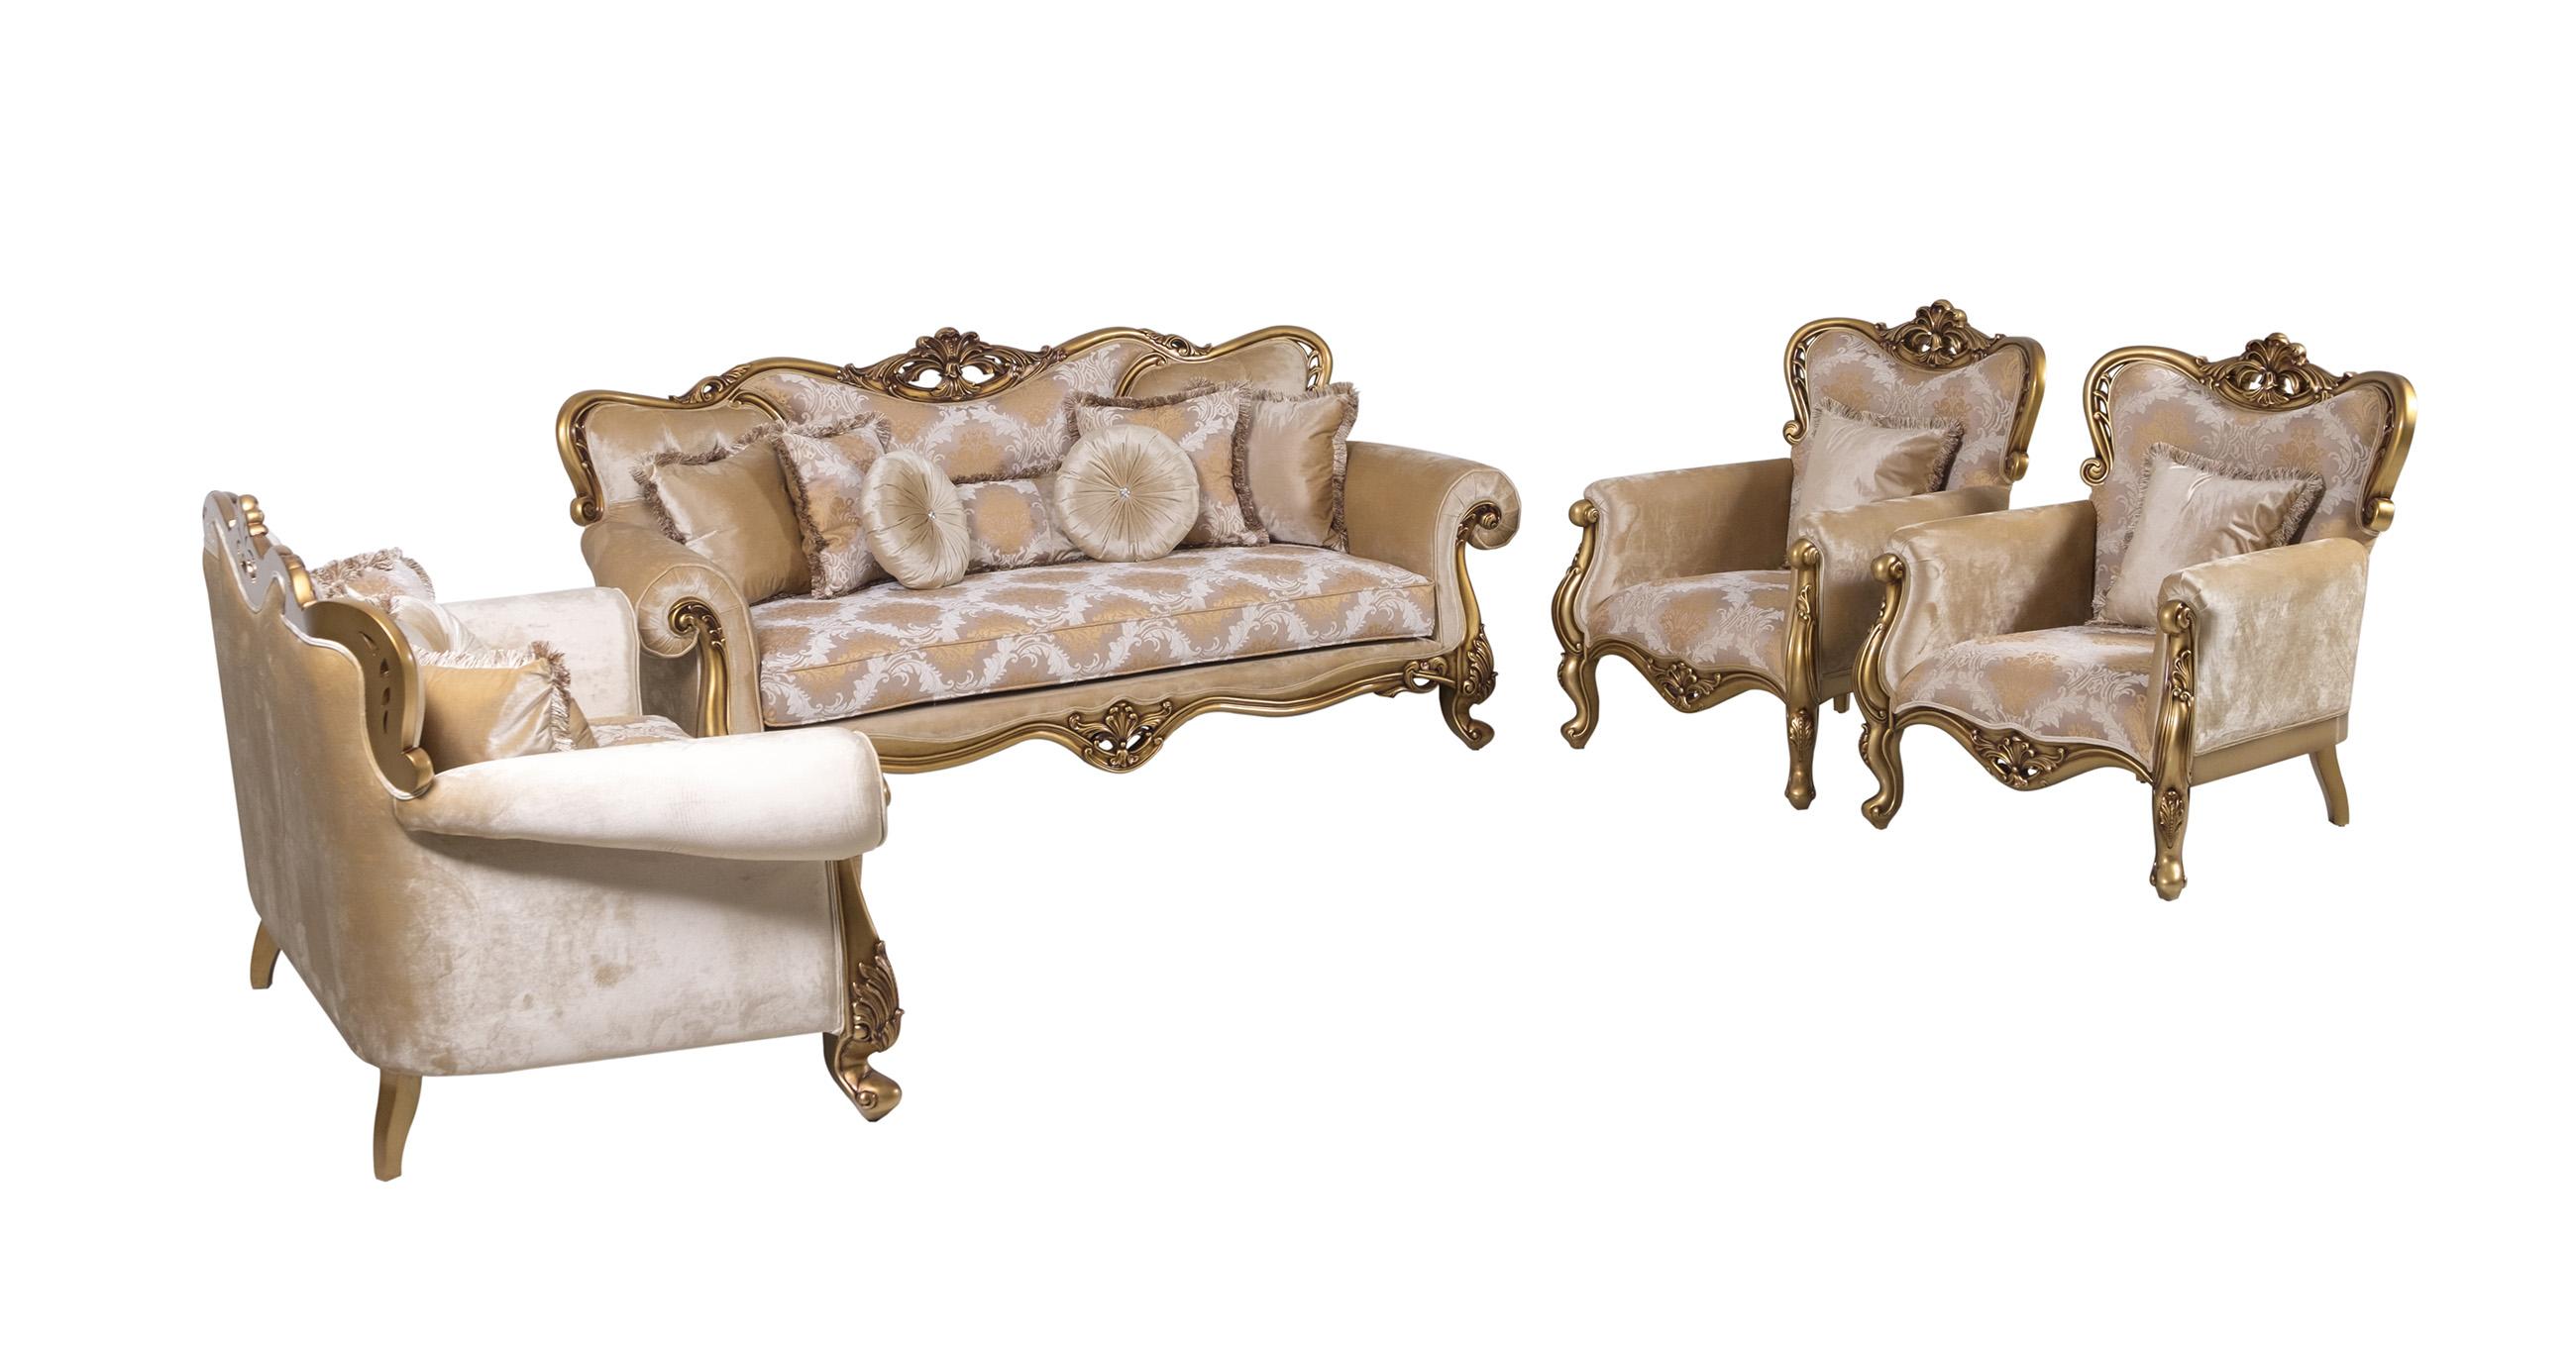 

    
Luxury Golden Bronze Wood Trim CLEOPATRA Sofa Set 4 Pcs EUROPEAN FURNITURE Classic
